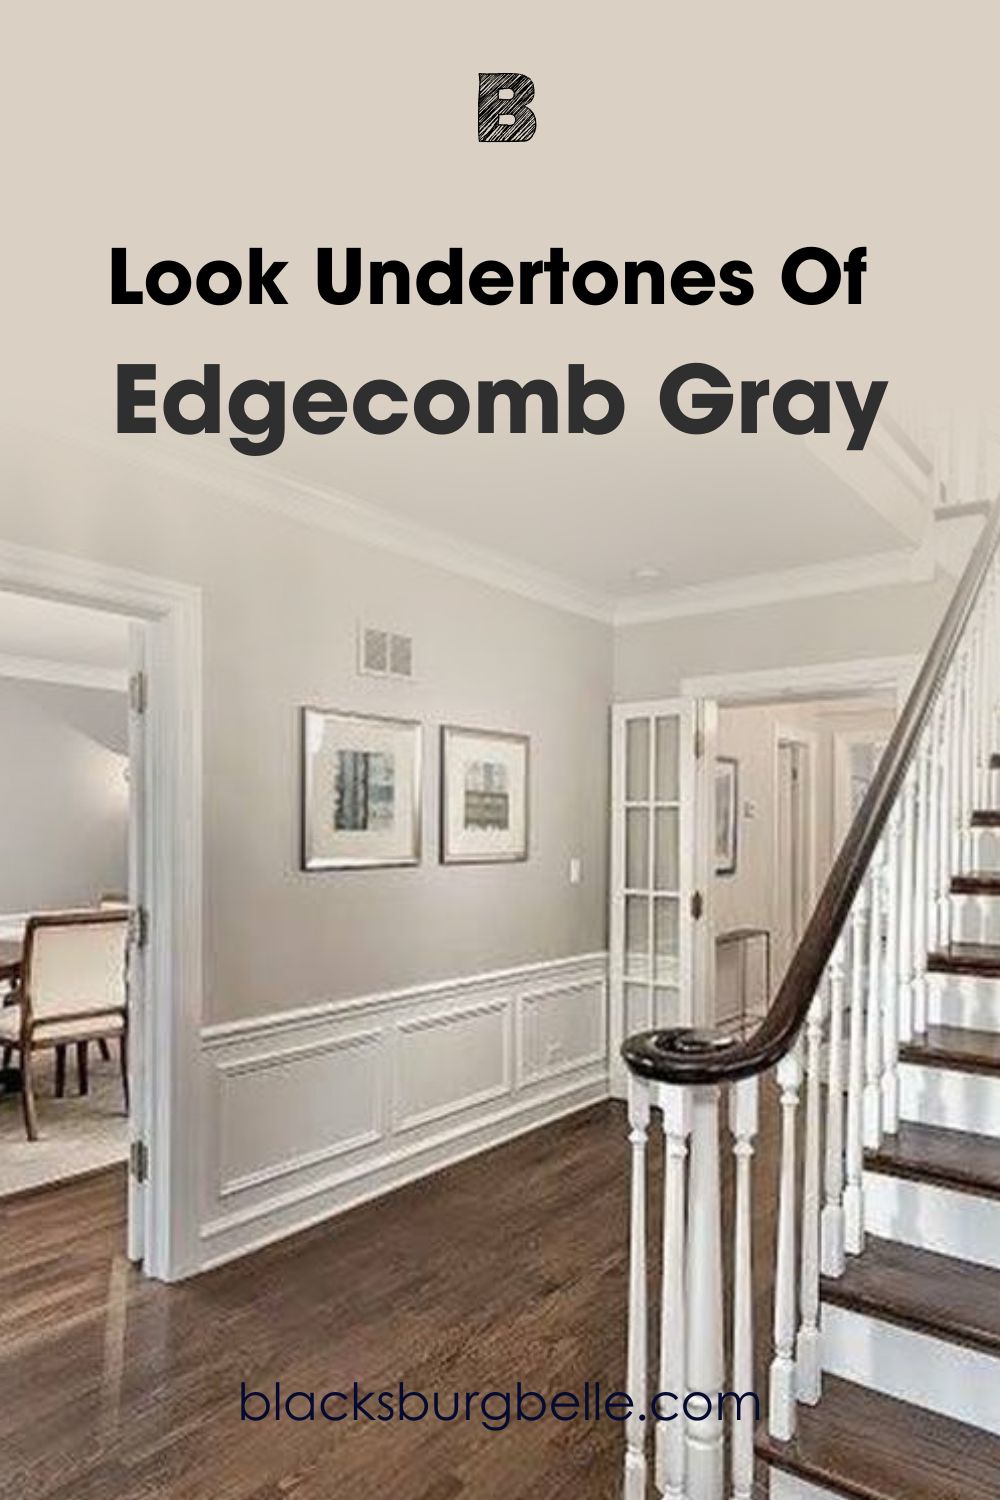 A Closer Look at Edgecomb Gray’s Undertones